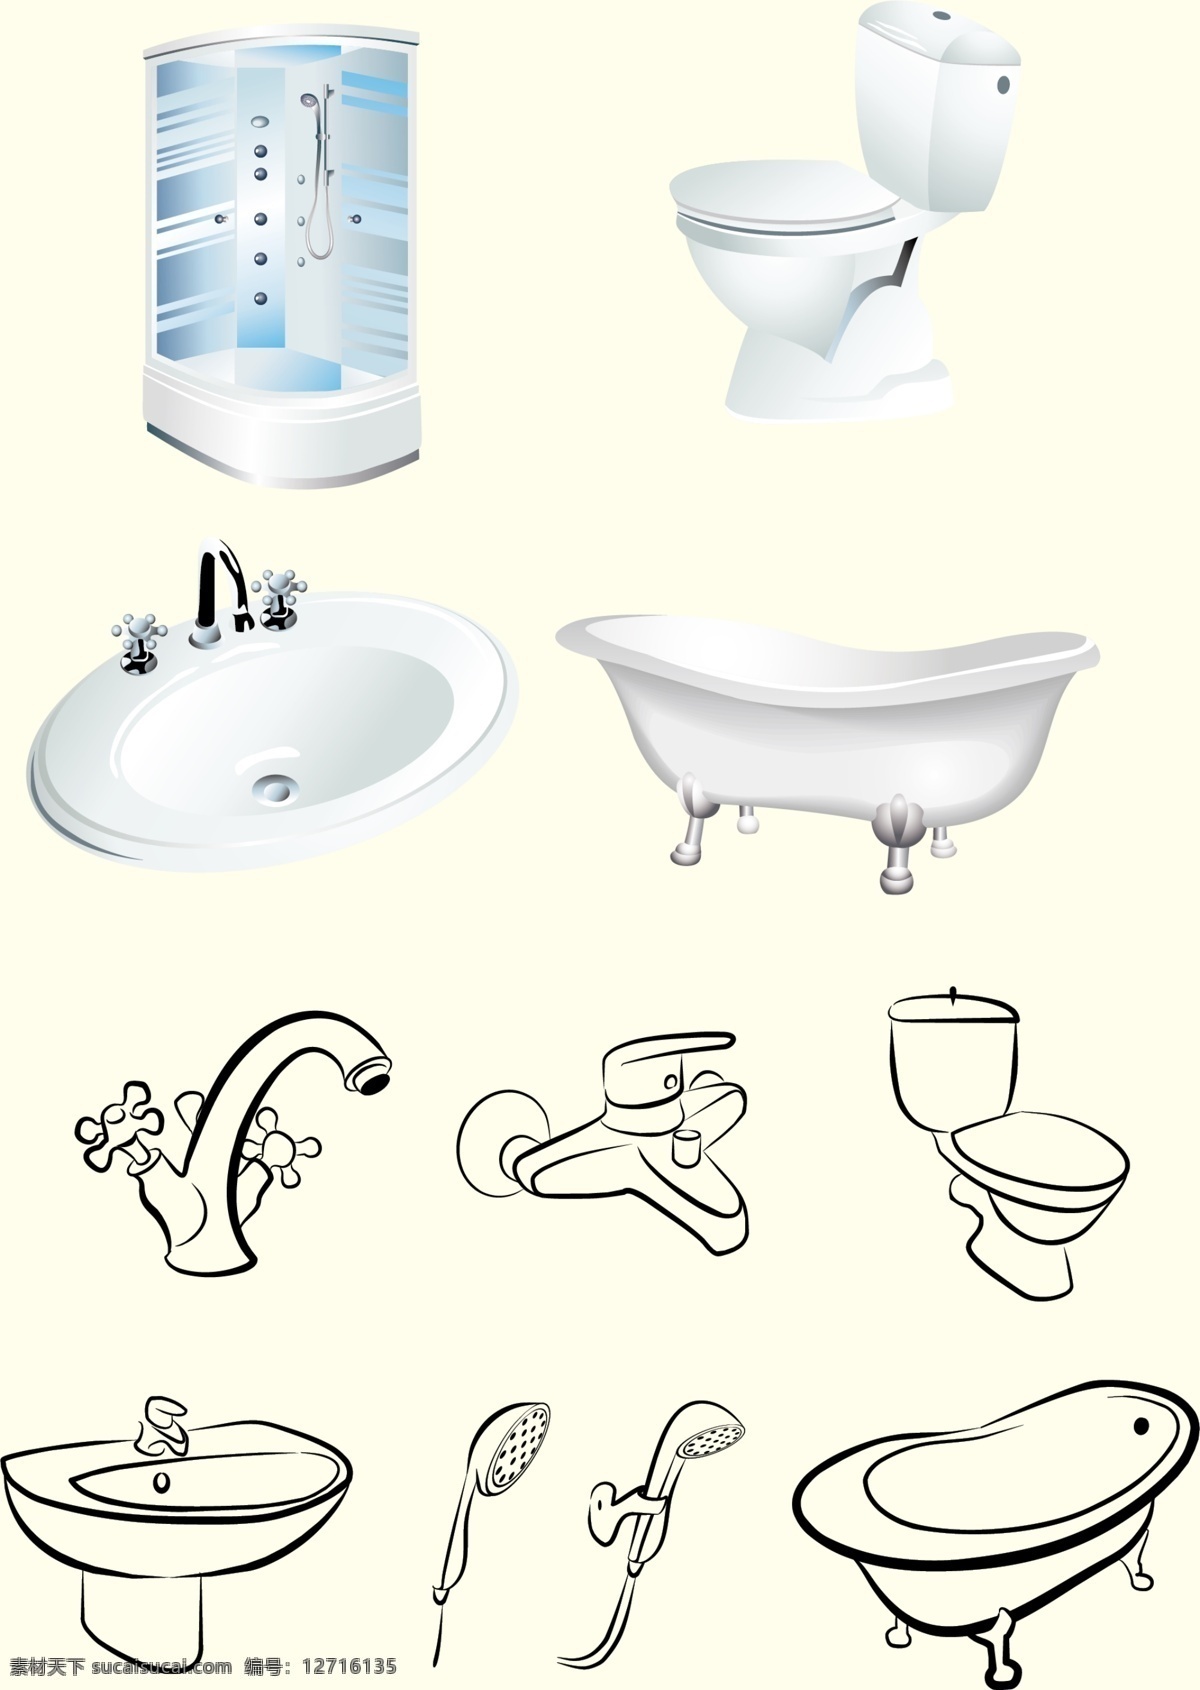 卫生间 洗浴用具 矢量 素材图片 洗脸池 马桶